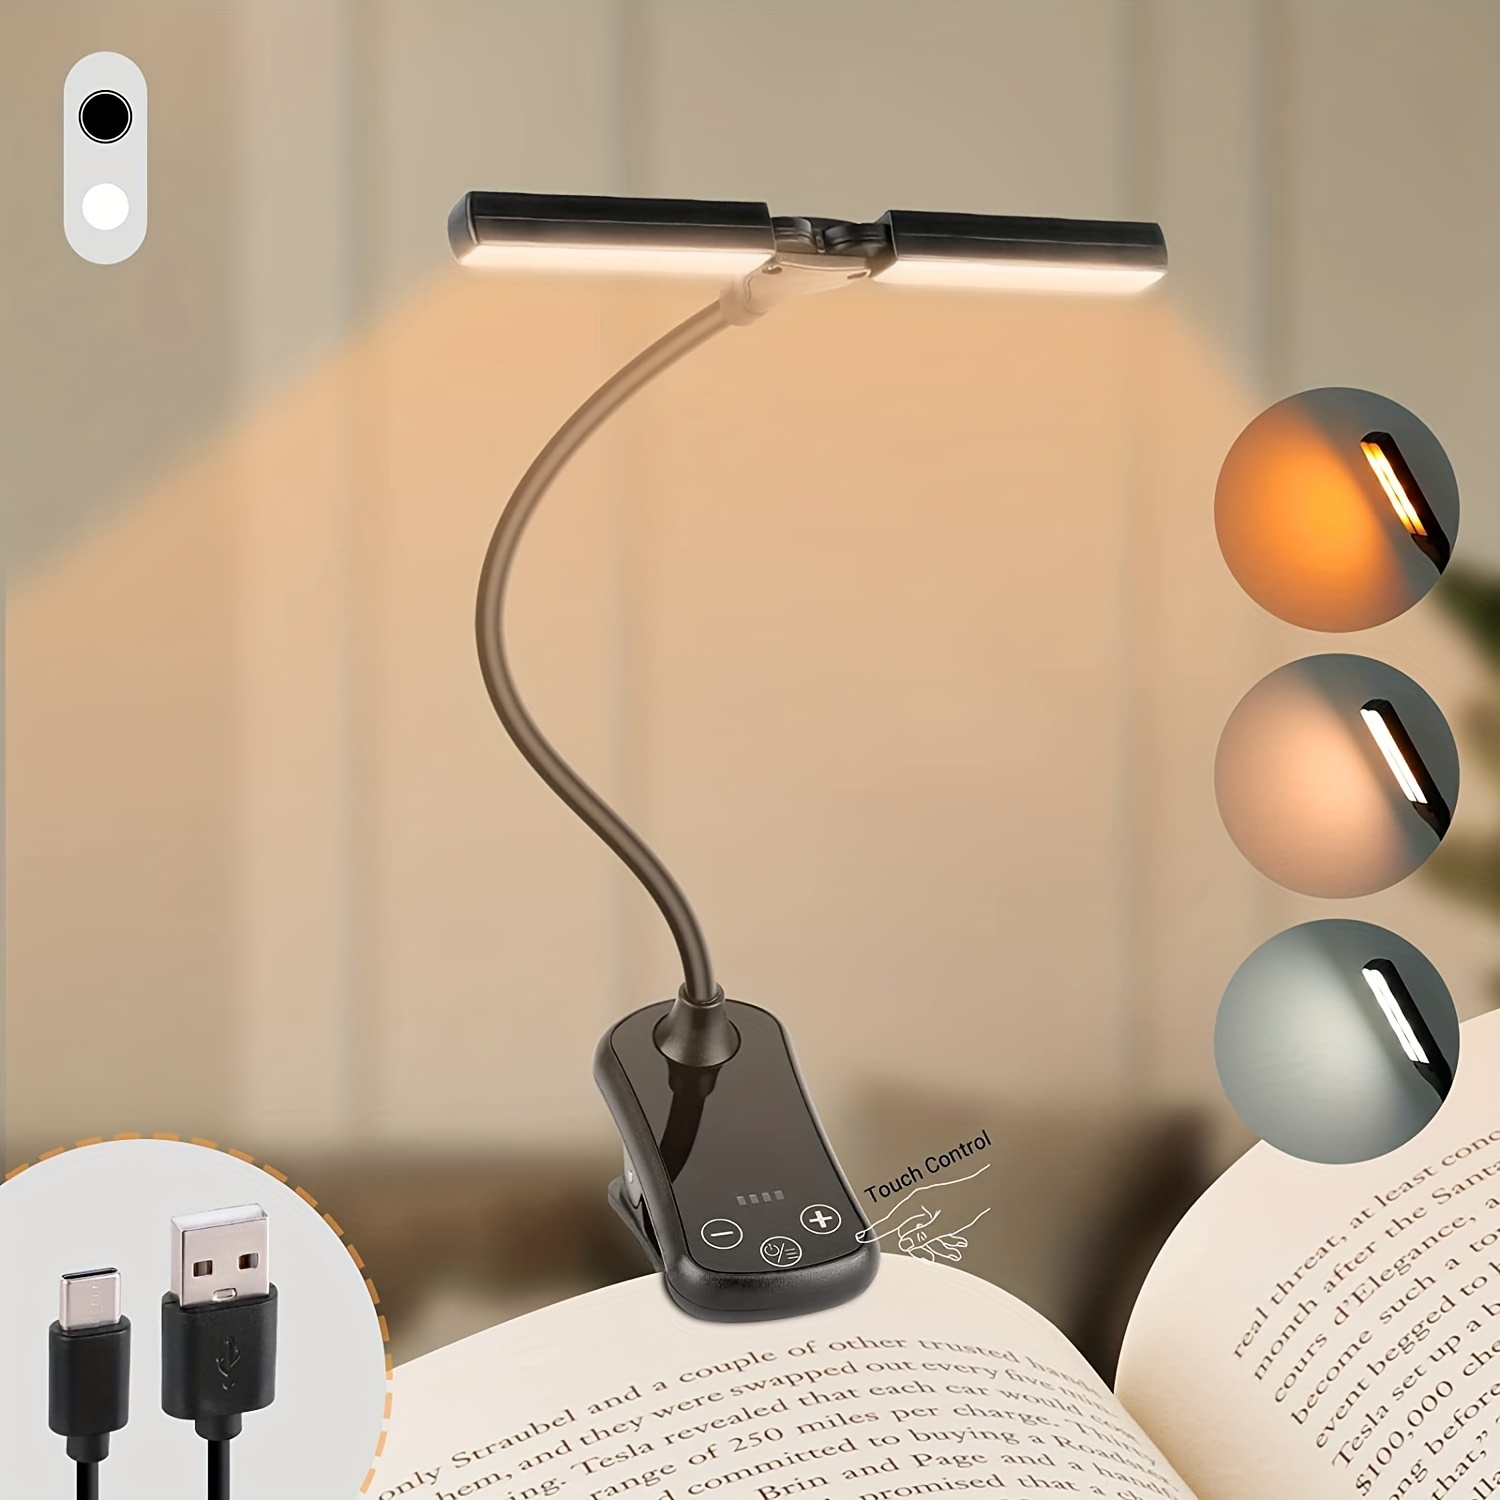 Lumière de livre, lampe de lecture rechargeable, 9 LED lumière de livre pour  la lecture au lit avec 3 luminosités, lampe de lecture facile Z